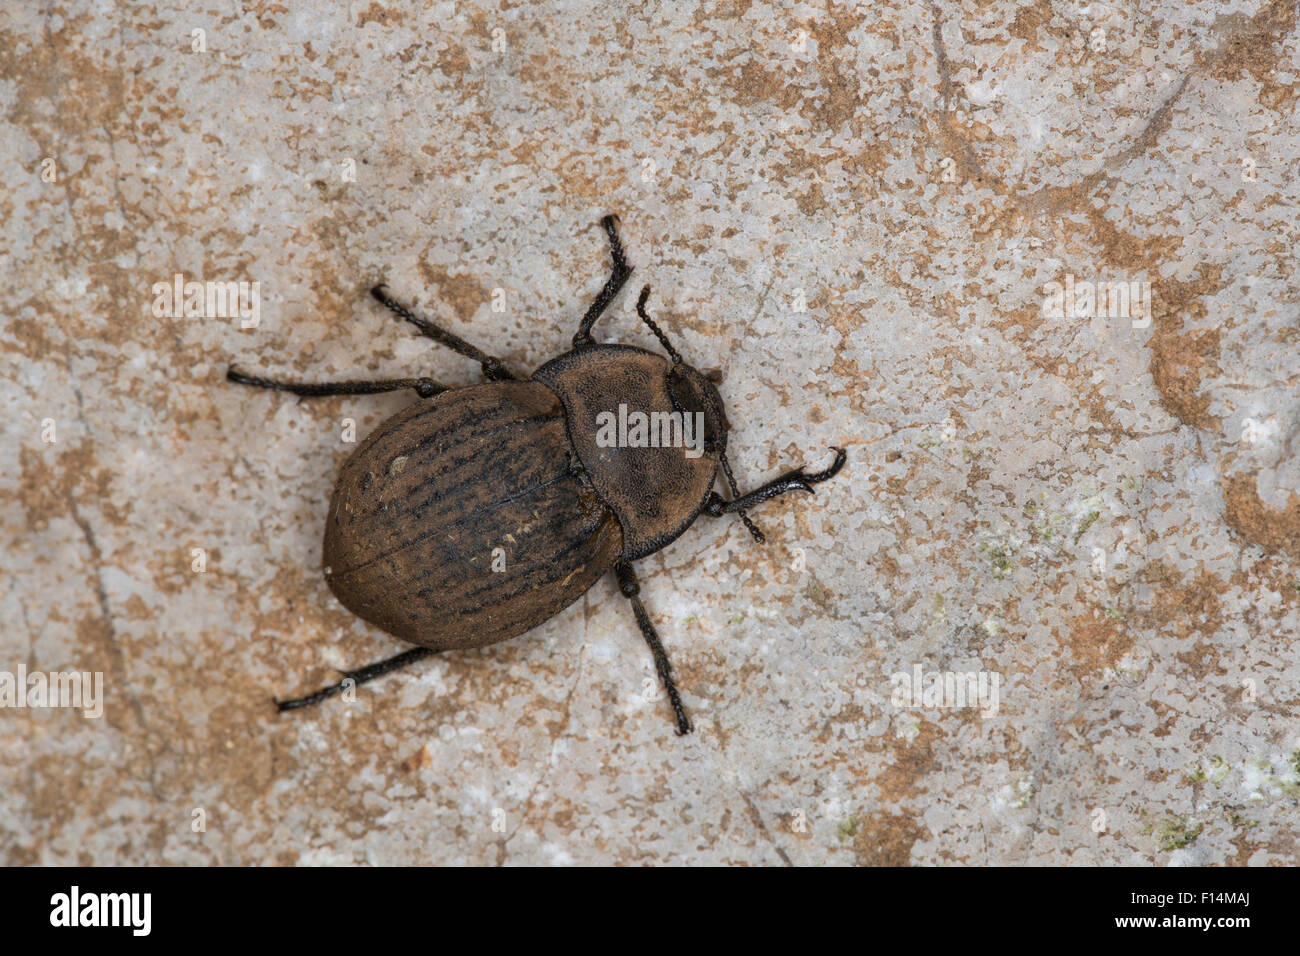 darkling beetle, Staubkäfer, Asida spec., Schwarzkäfer, Tenebrionidae, darkling beetles, Süd-Frankreich Stock Photo